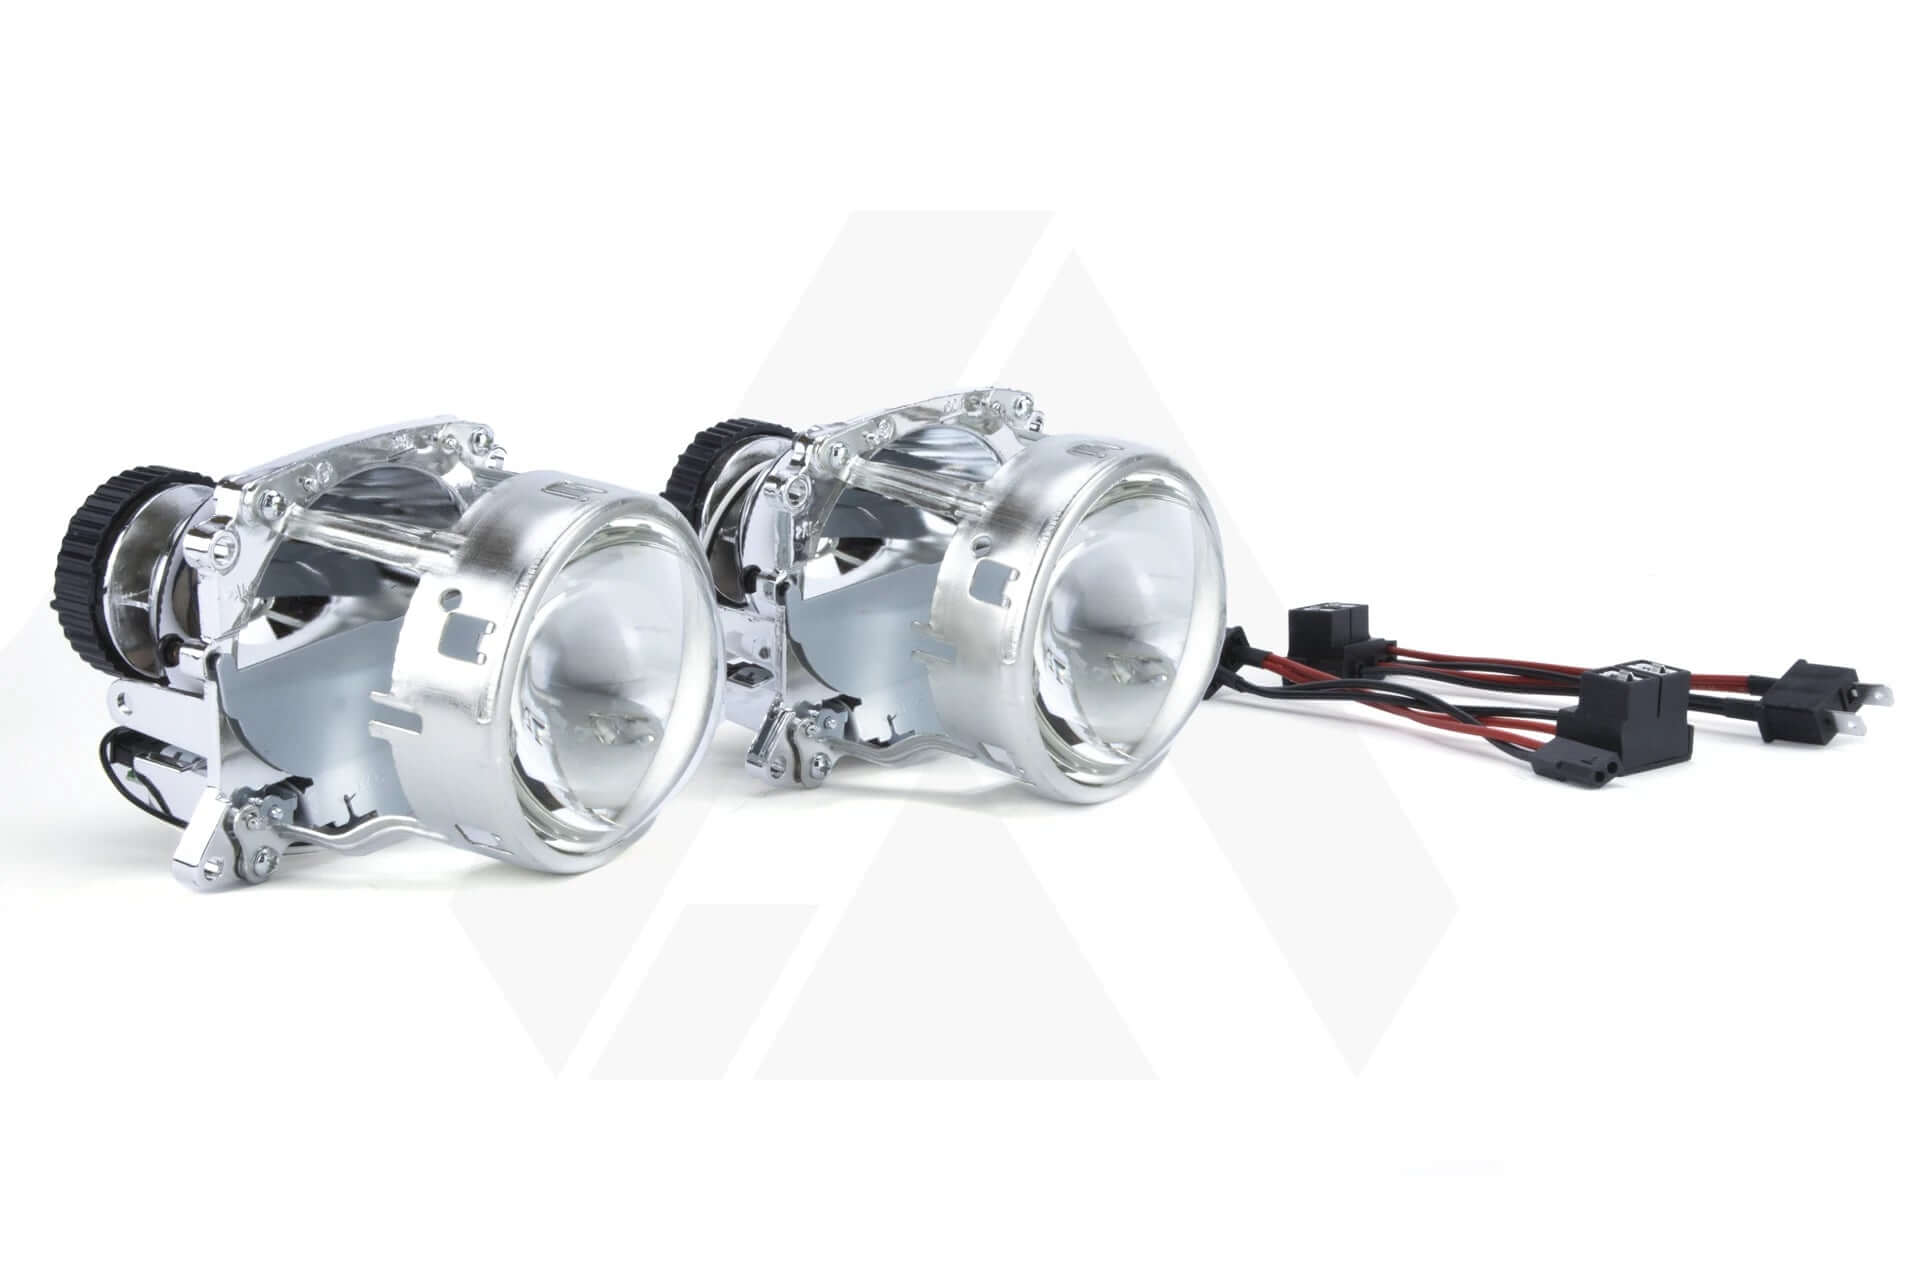 Volkswagen Touran 03-07 bi-xenon HID headlight projector repair & upgrade kit